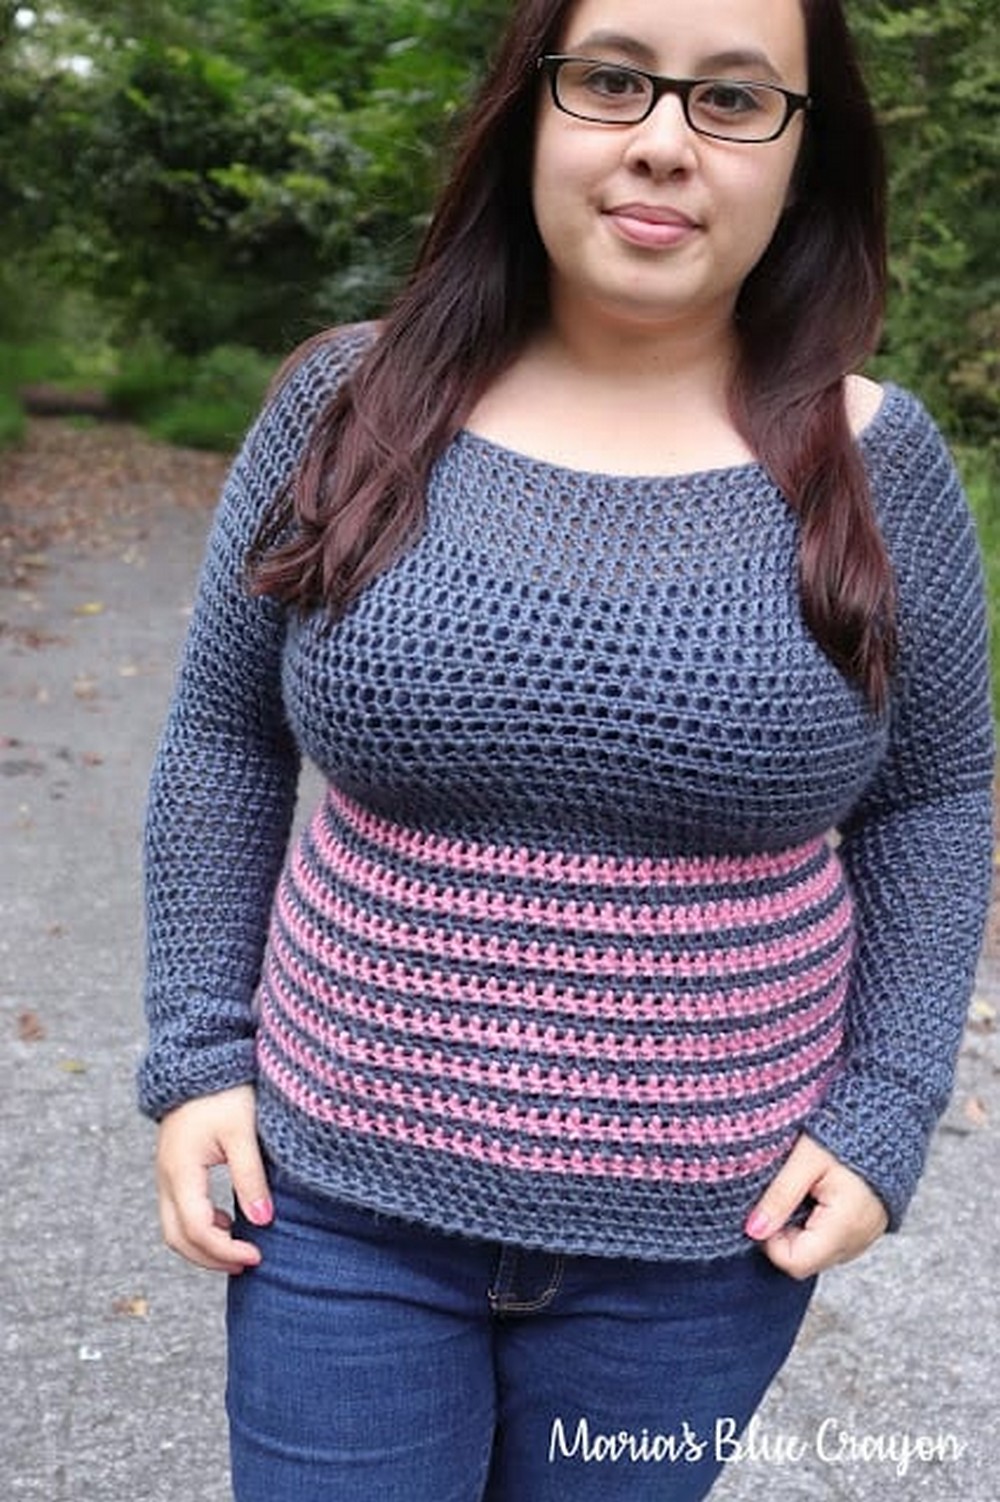 Striped crochet raglan style sweater pattern